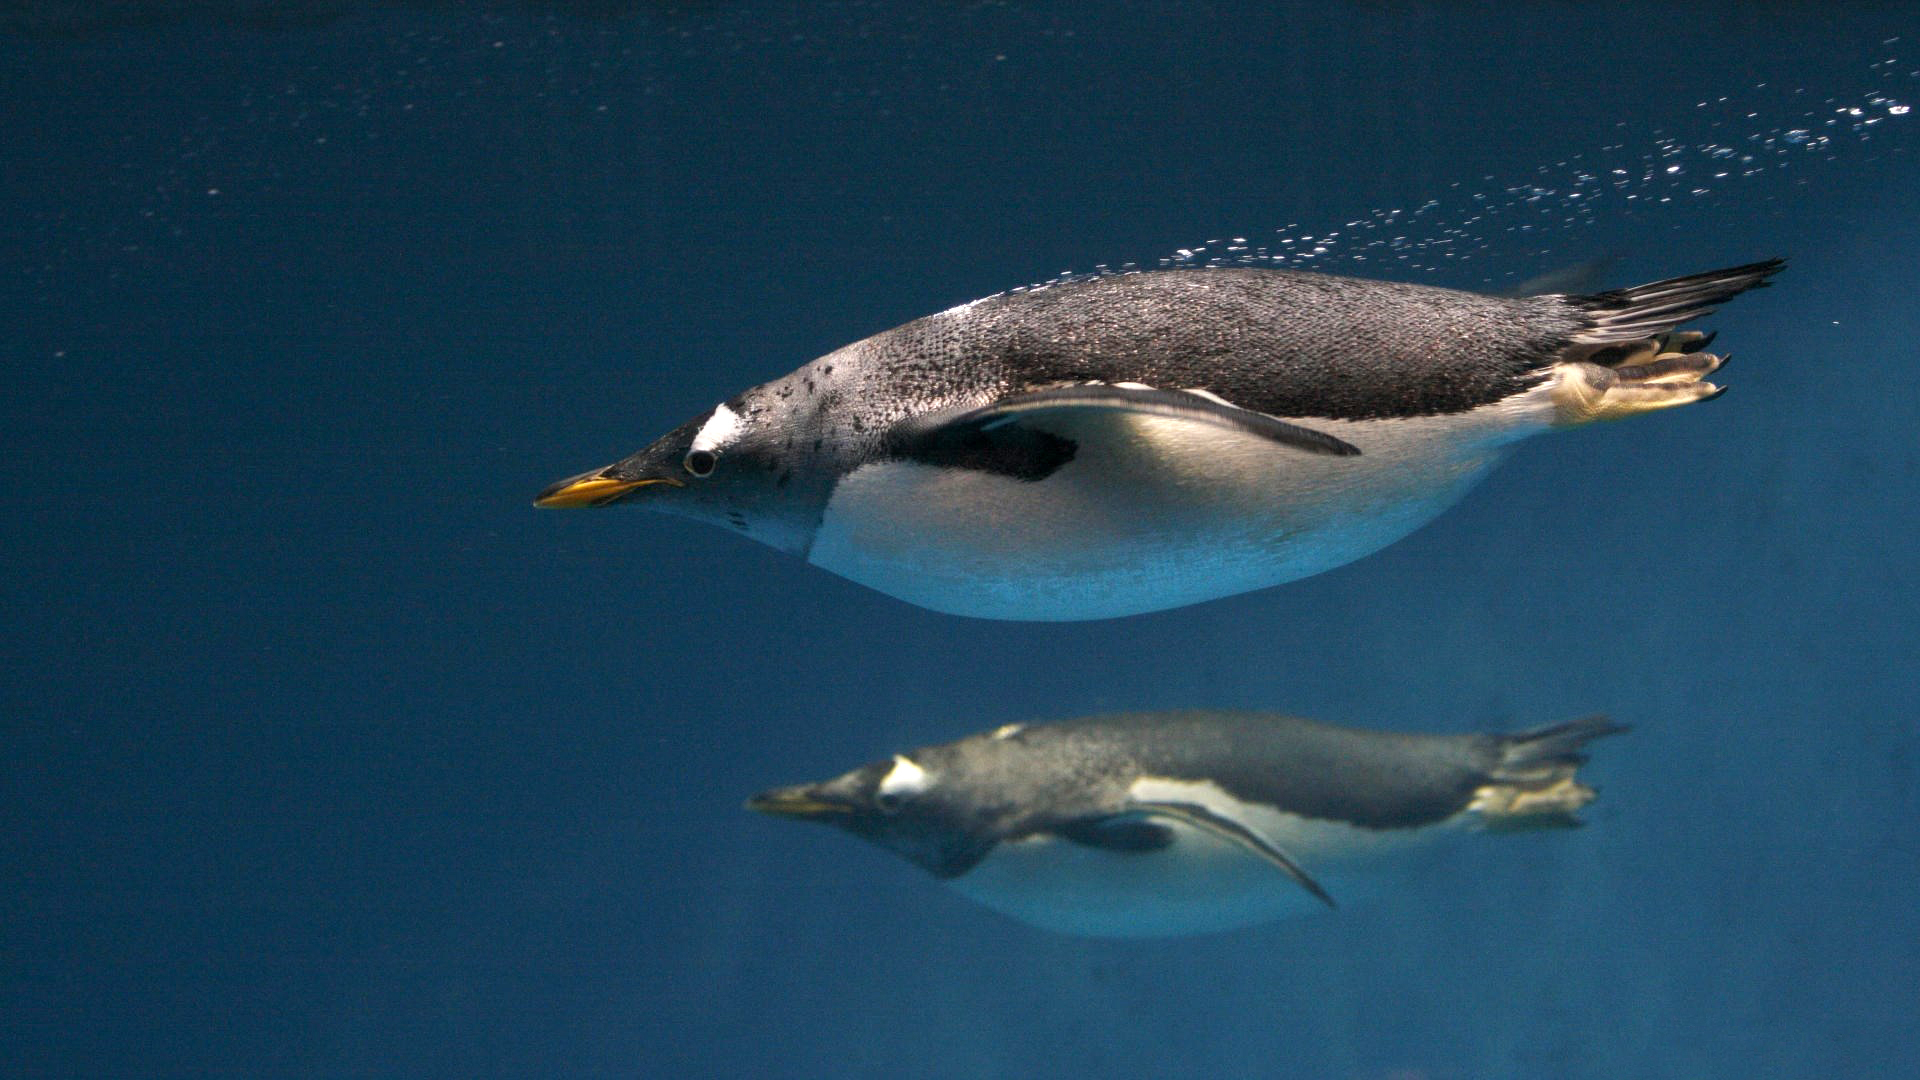 Пингвины в воду загрузить